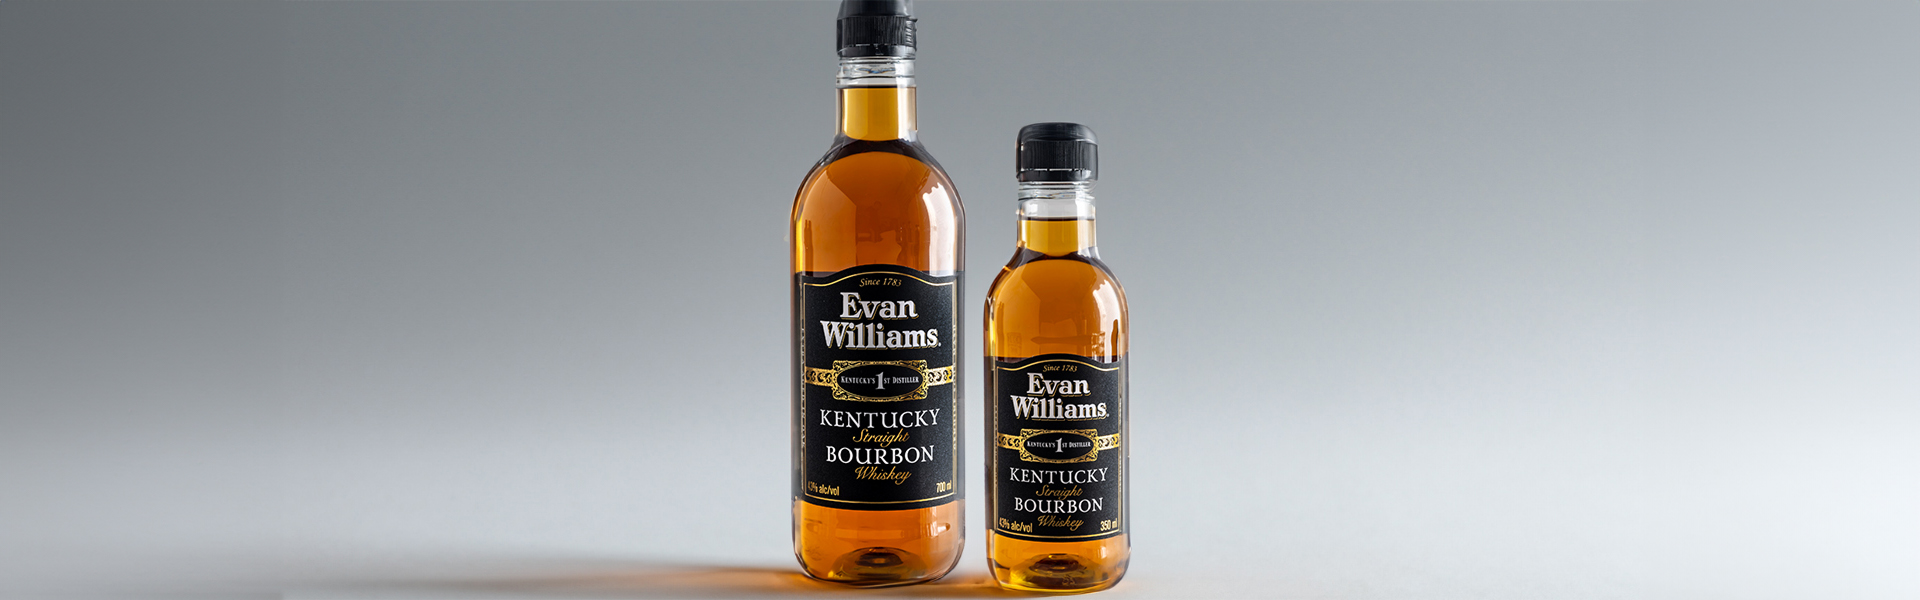 Bourbonklassiker i ny kostym, Evan Williams Extra Aged nu på PET-flaska